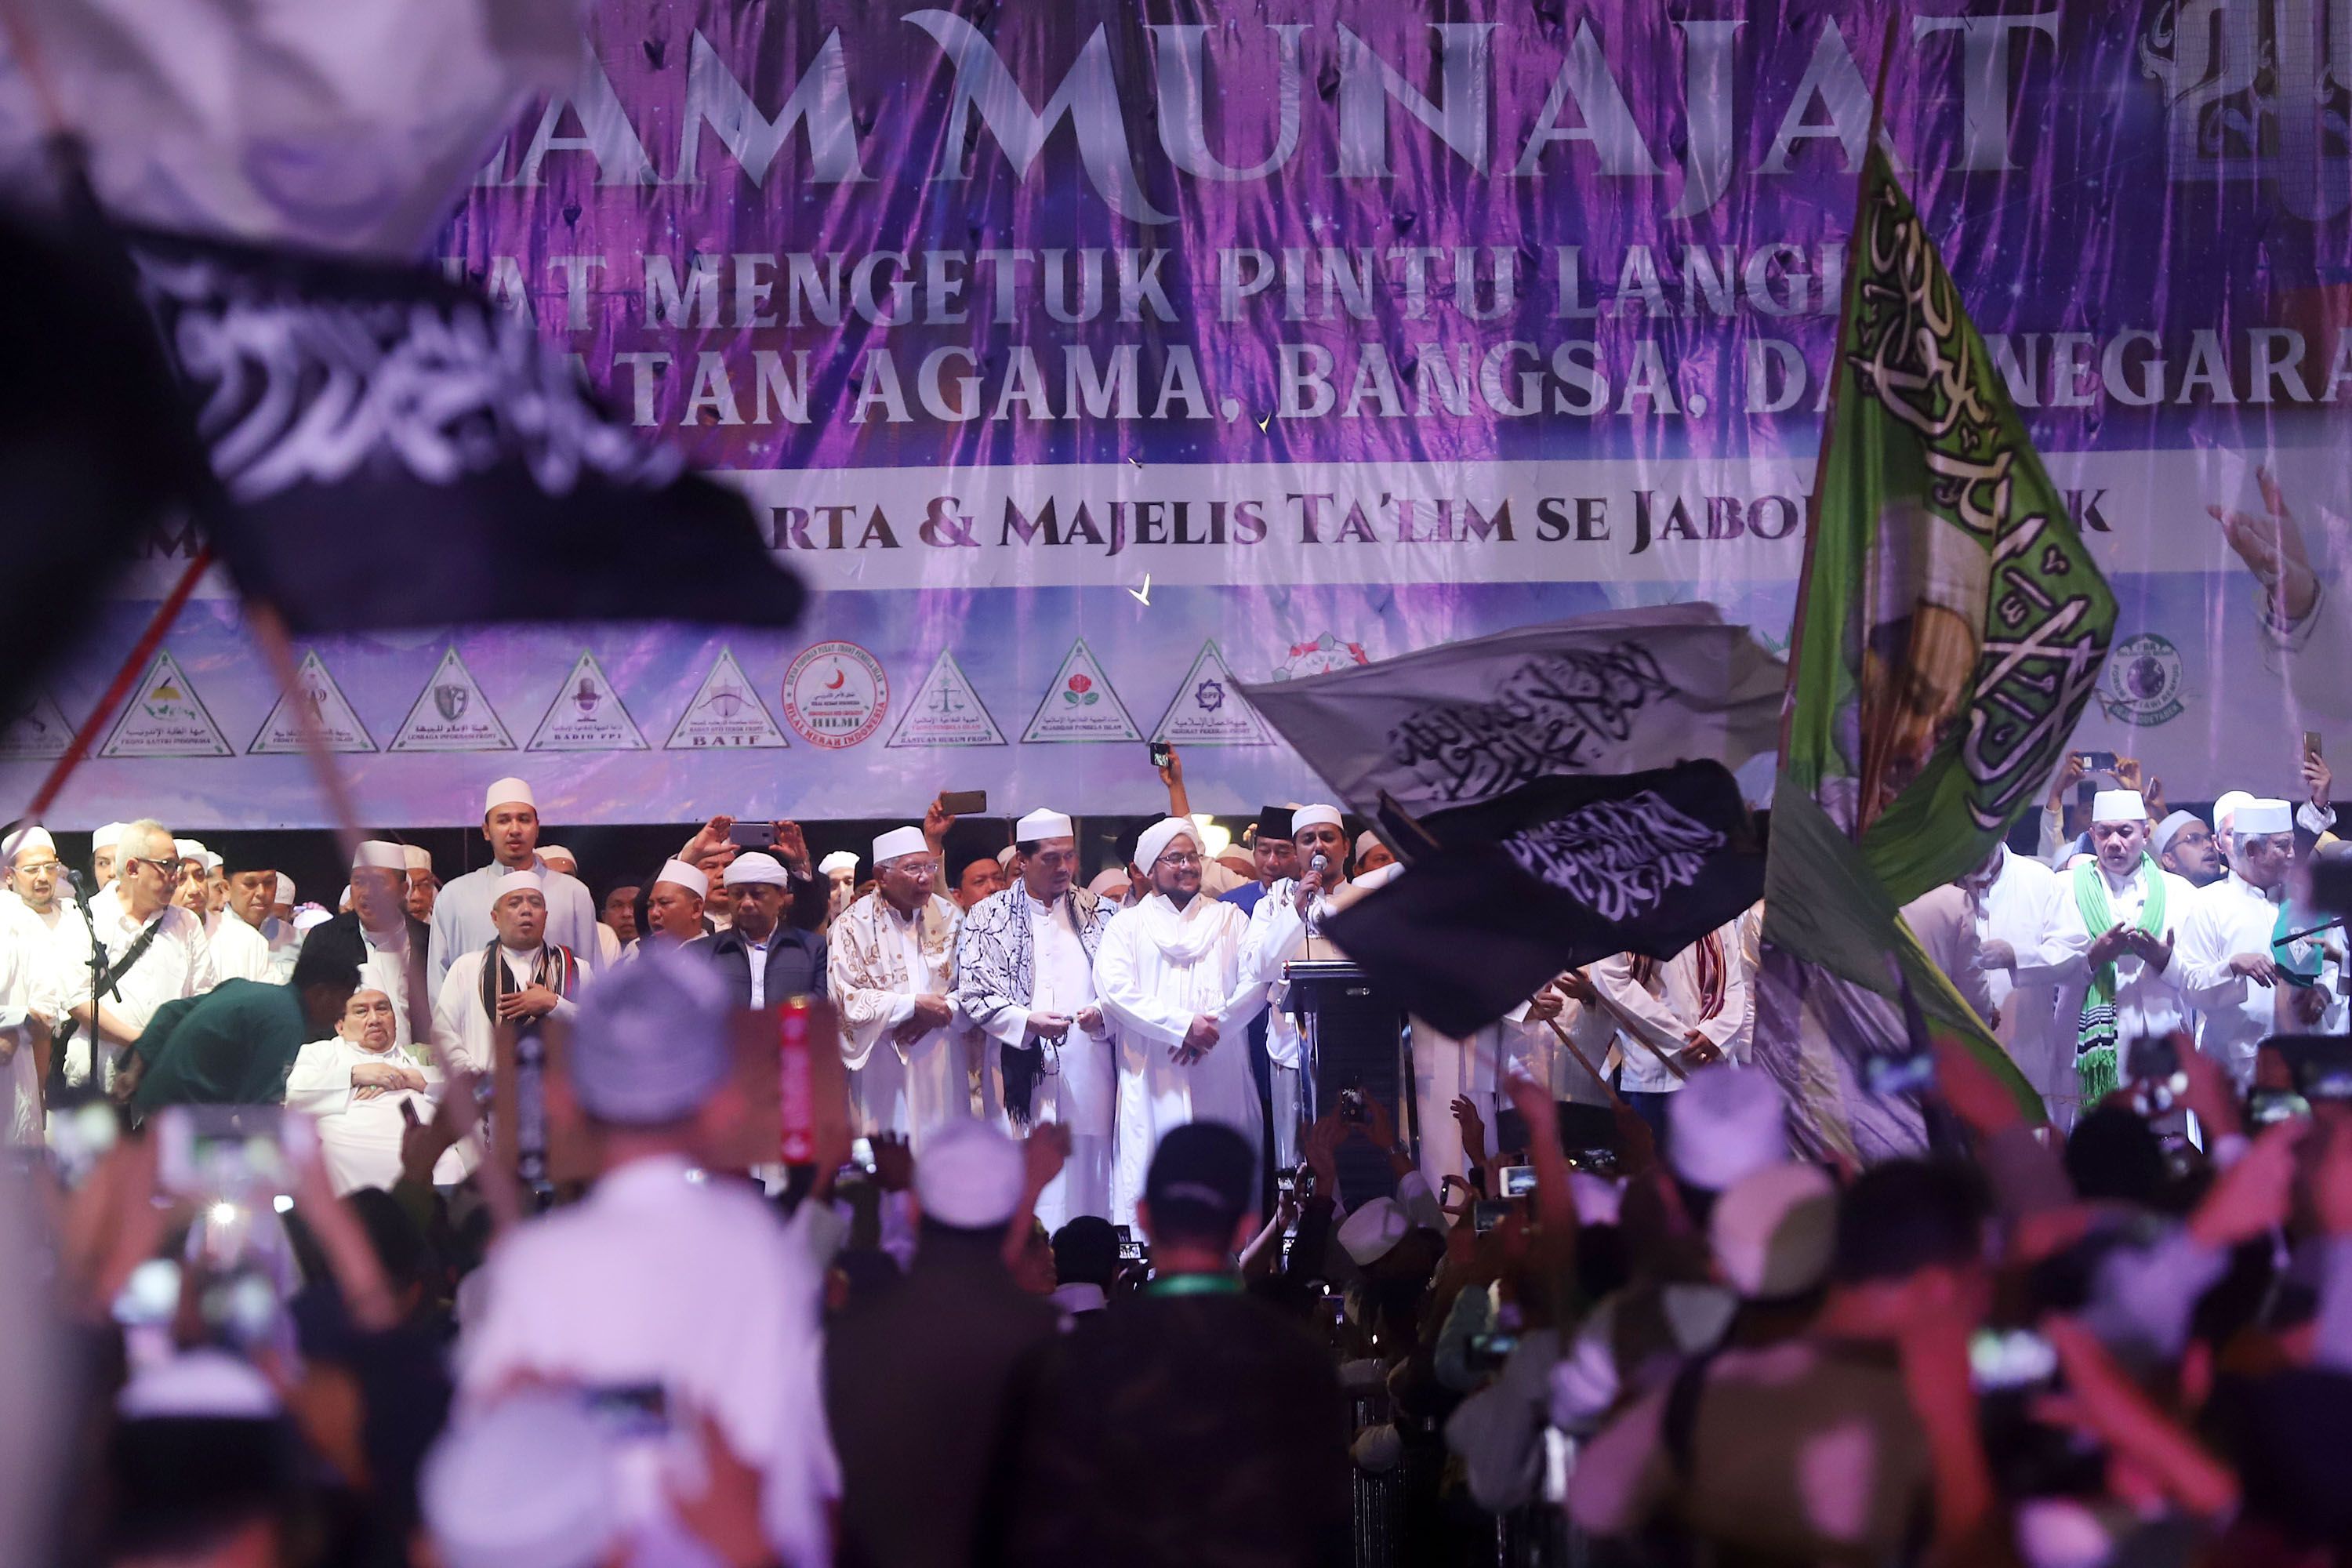 Jemaah Munajat 212 saat melaksanakan kegiatan sholawat dan dzikir nasional Aksi Malam Munajat 212 di Monas, Jakarta Pusat, Kamis (21/2/2019). Kegiatan Munajat 212 dan zikir bersama tersebut bertujuan untuk mempererat persatuan semua elemen bangsa Indonesia. (Tribunnews/Jeprima)